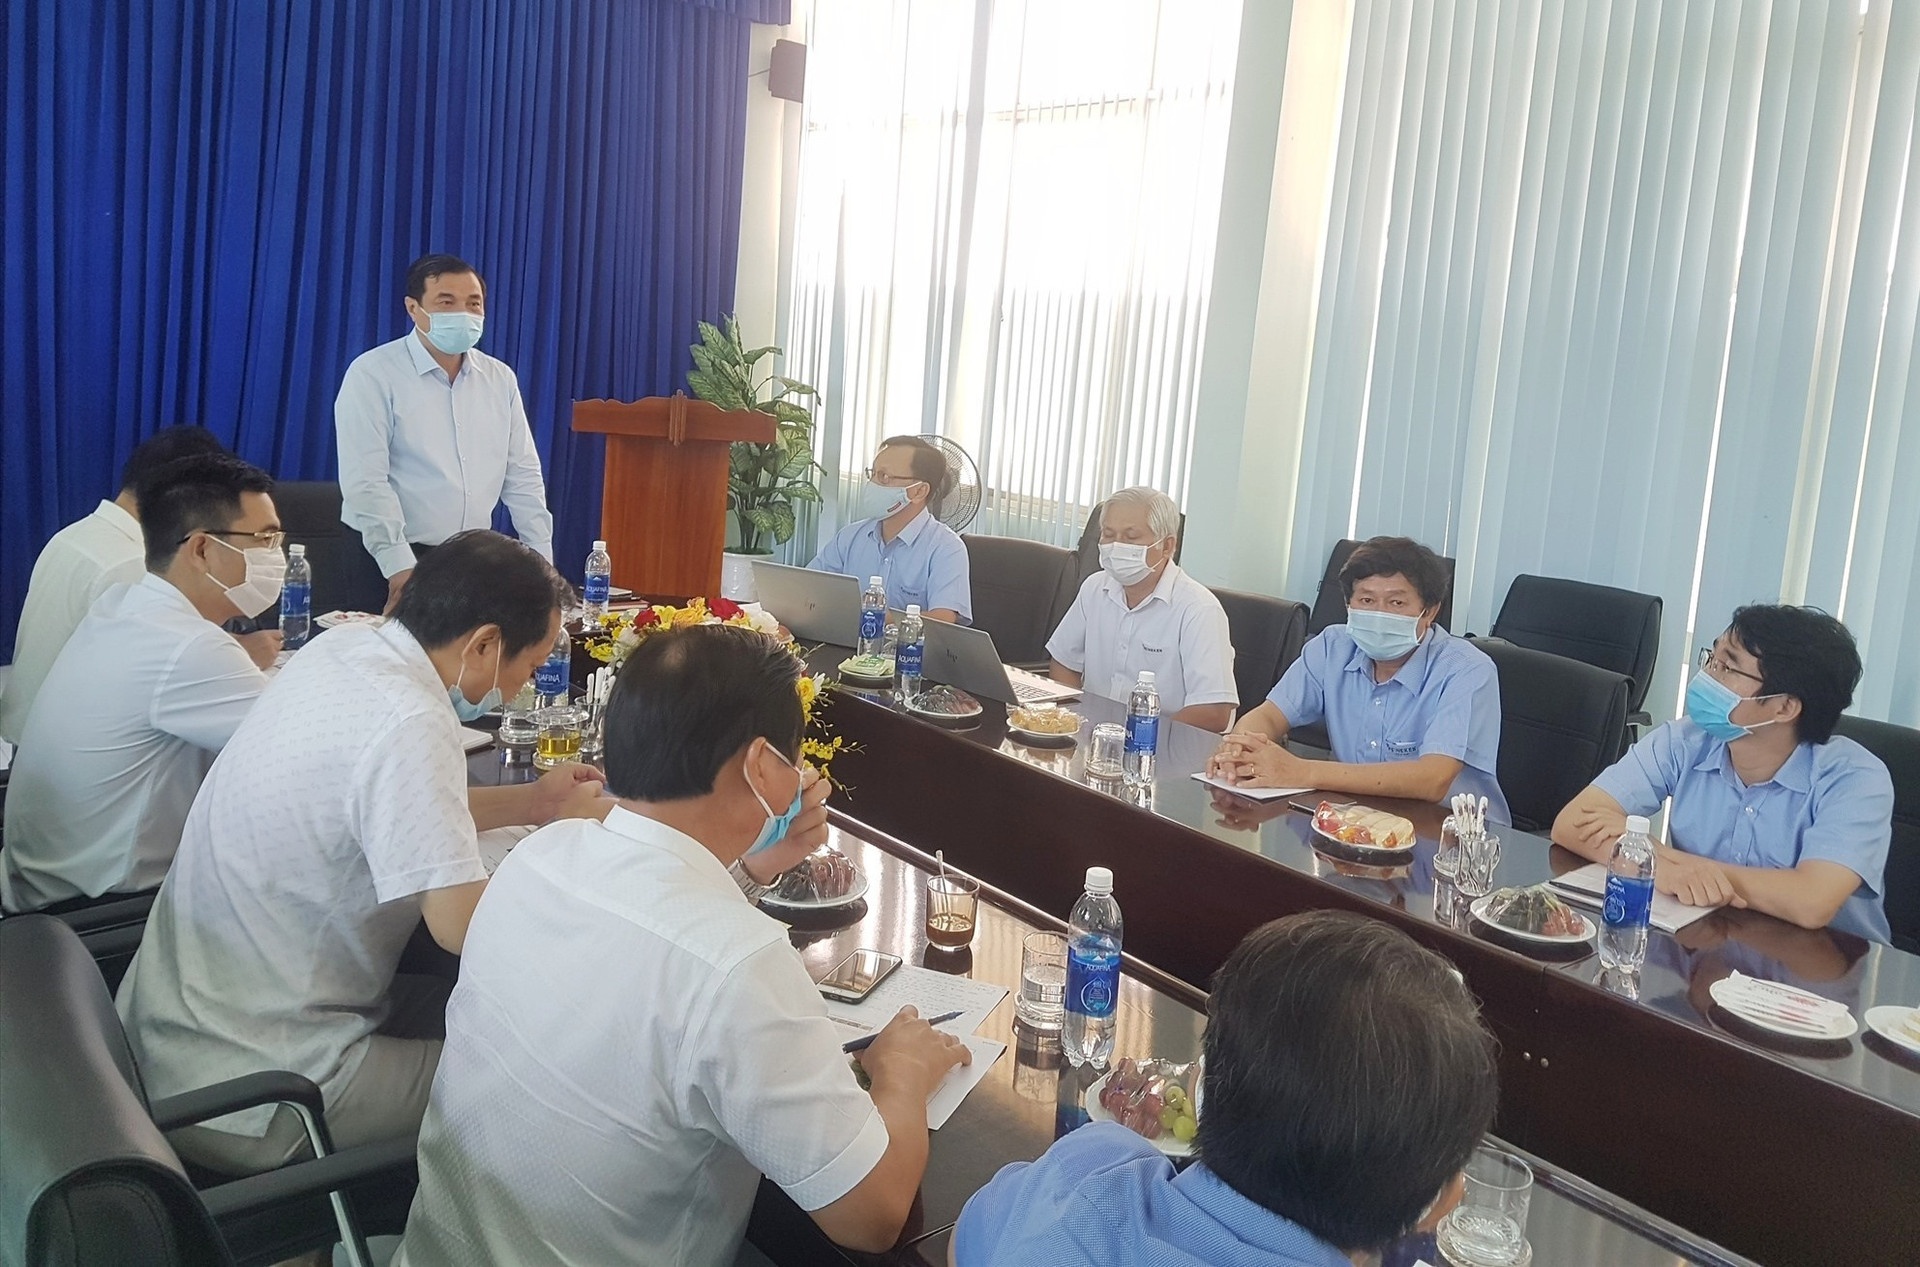 Bí thư Tỉnh ủy Phan Việt Cường yêu cầu lãnh đạo các công ty tại KCN Điện Nam - Điện Ngọc vừa đảm bảo phòng dịch vừa duy trì hoạt động sản xuất. Ảnh: D.L